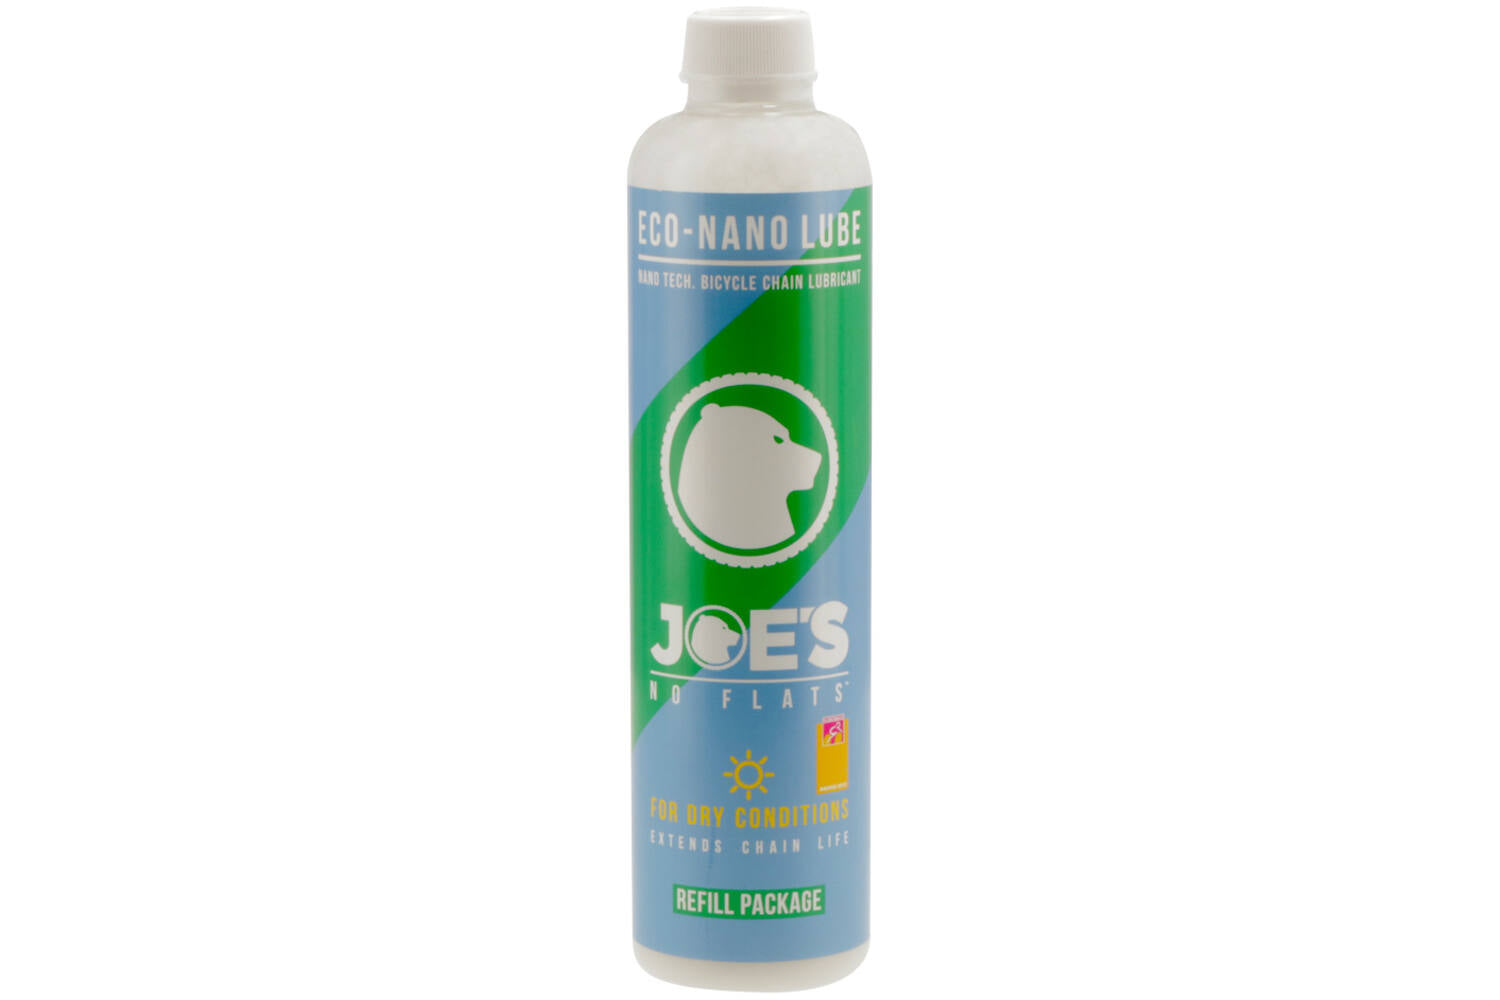 Joe's no flats - eco nano lube 500ml (druppelfles) voor droge condities